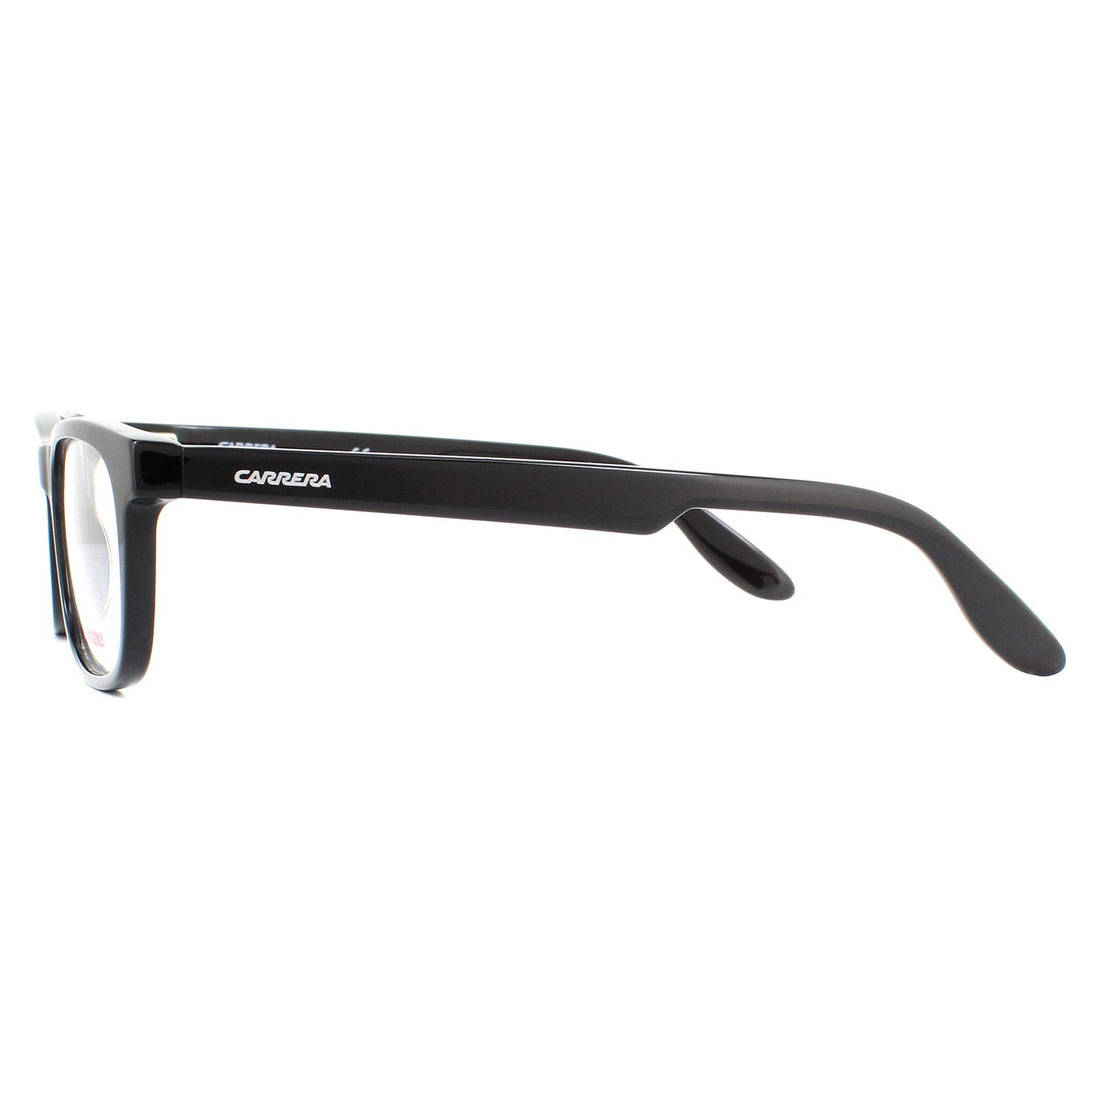 Carrera Glasses Frames CA9923 807 Black Men